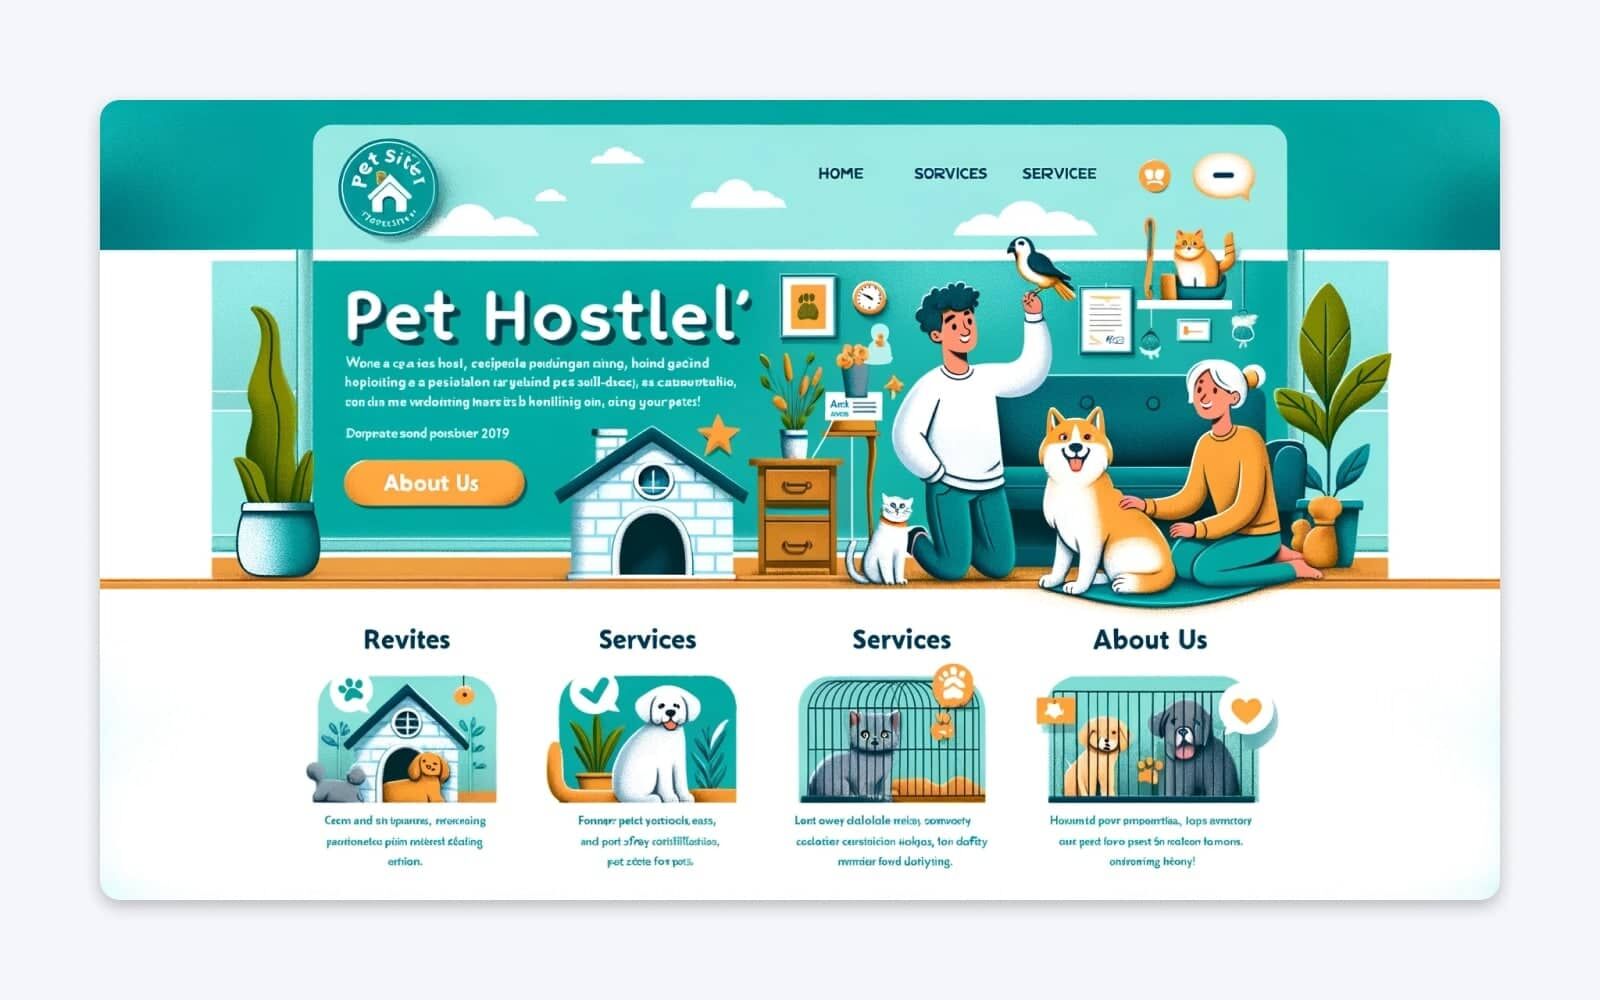 为我的宠物日托中心 Pet Hostel 设计一个网站主页